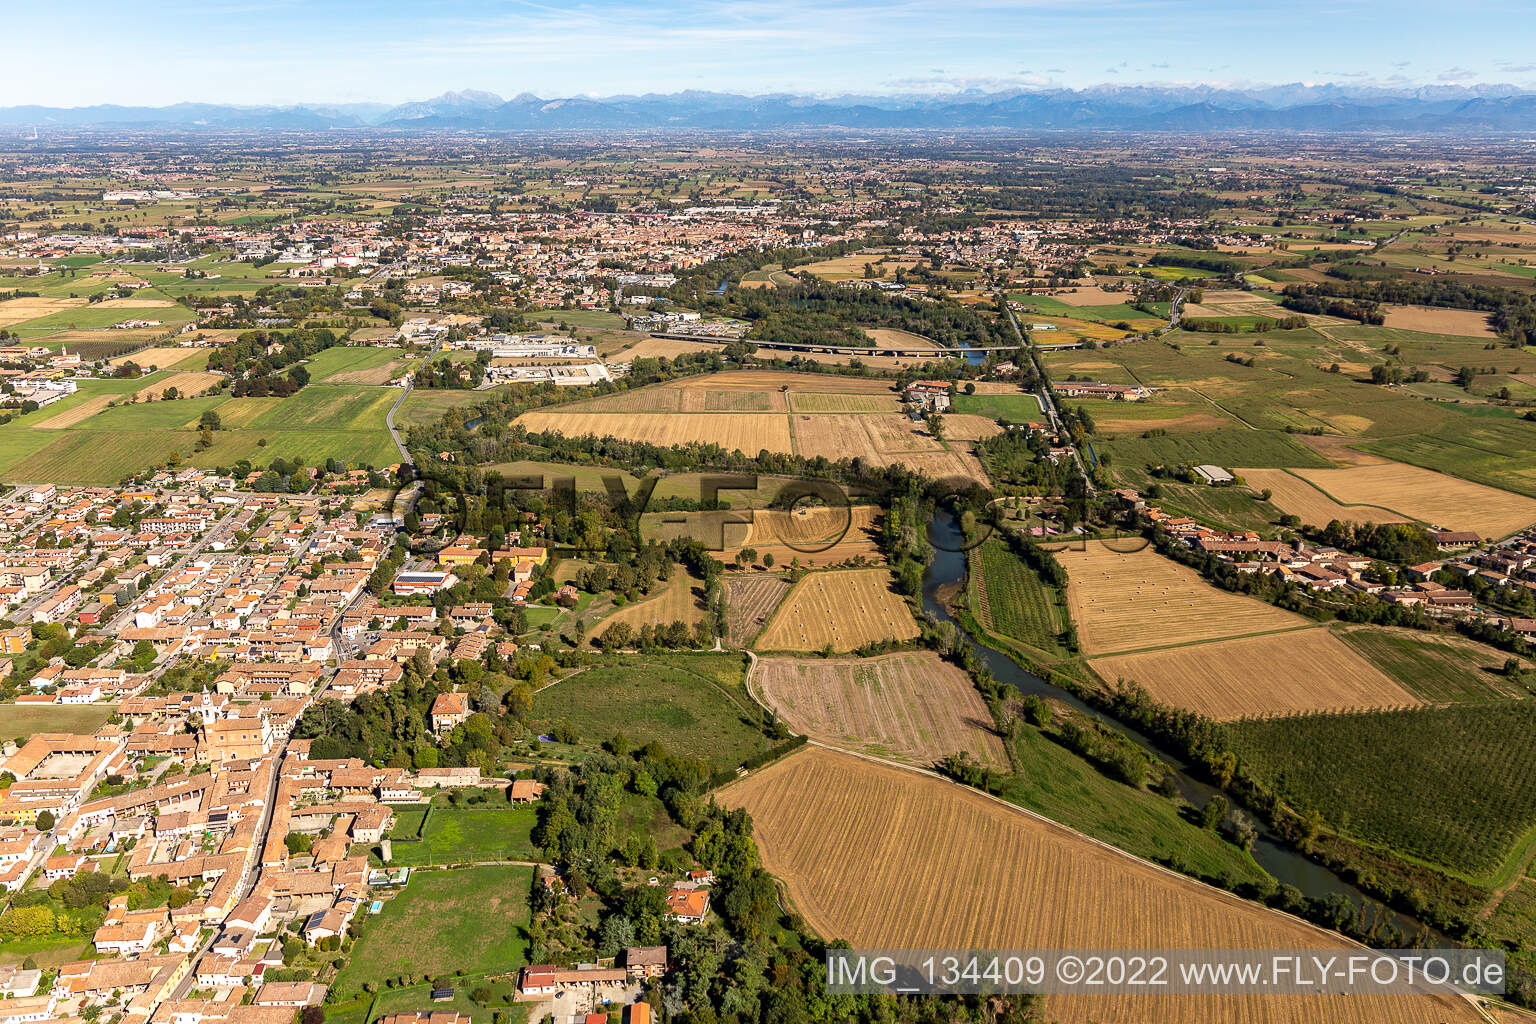 Vue aérienne de Ripalta Cremasca dans le département Cremona, Italie